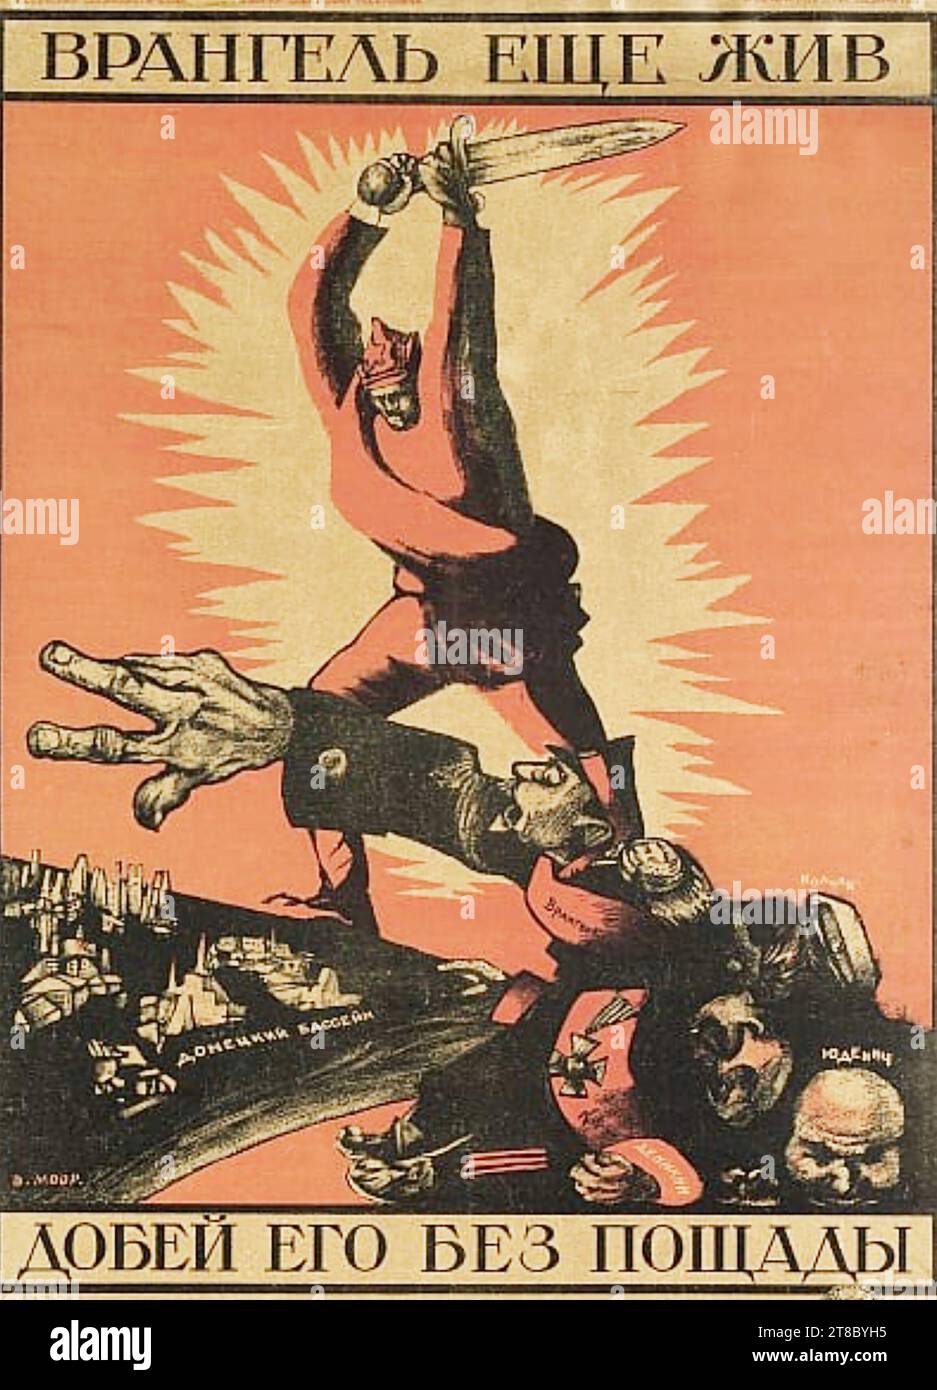 DMITRY MOOR (1883-1946) artista russo e poster designer. Wrangel e' ancora vivo. Finitelo!' Un riferimento a Pyotr Wrangel, un comandante aniti-bolscevico nella guerra civile russa. Foto Stock